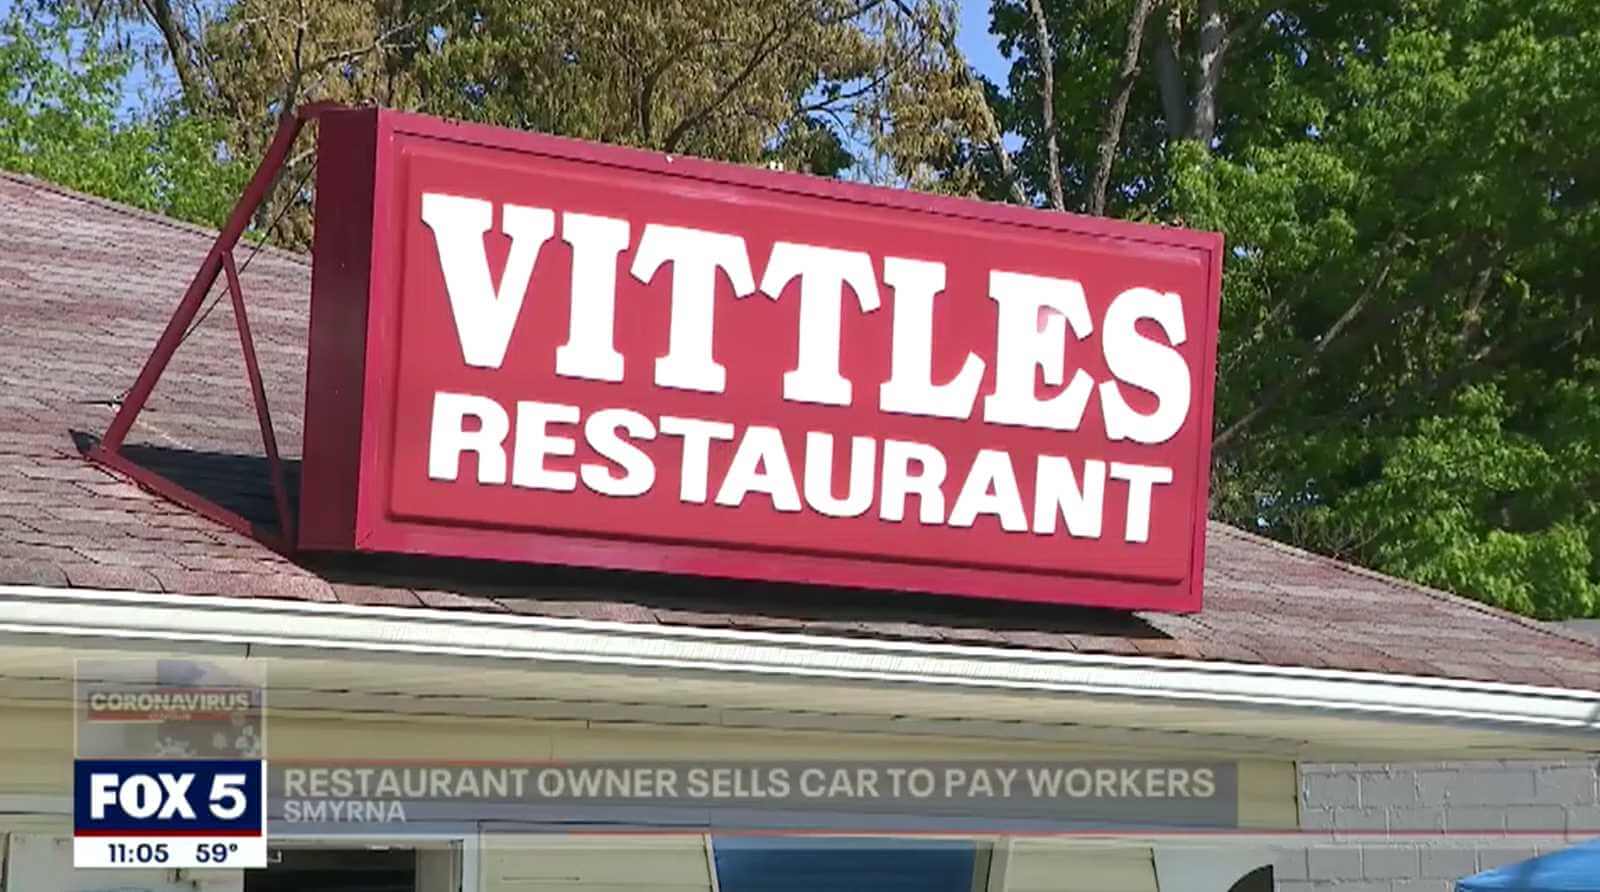 Vittles Restaurant